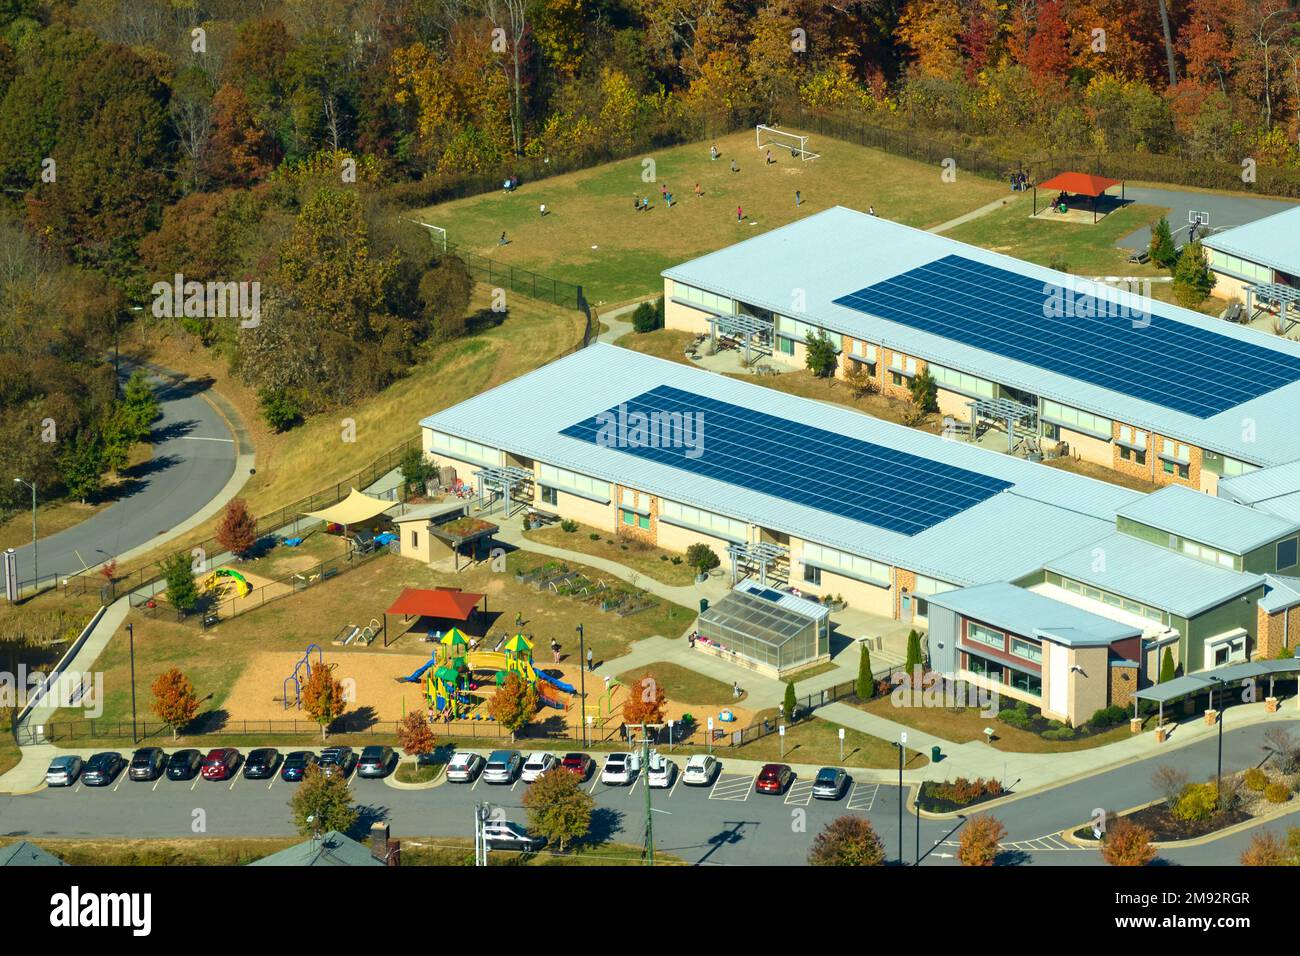 Dach des amerikanischen Schulgebäudes mit Photovoltaik-Solarpaneelen für die Stromerzeugung. Konzept für erneuerbare Energien Stockfoto